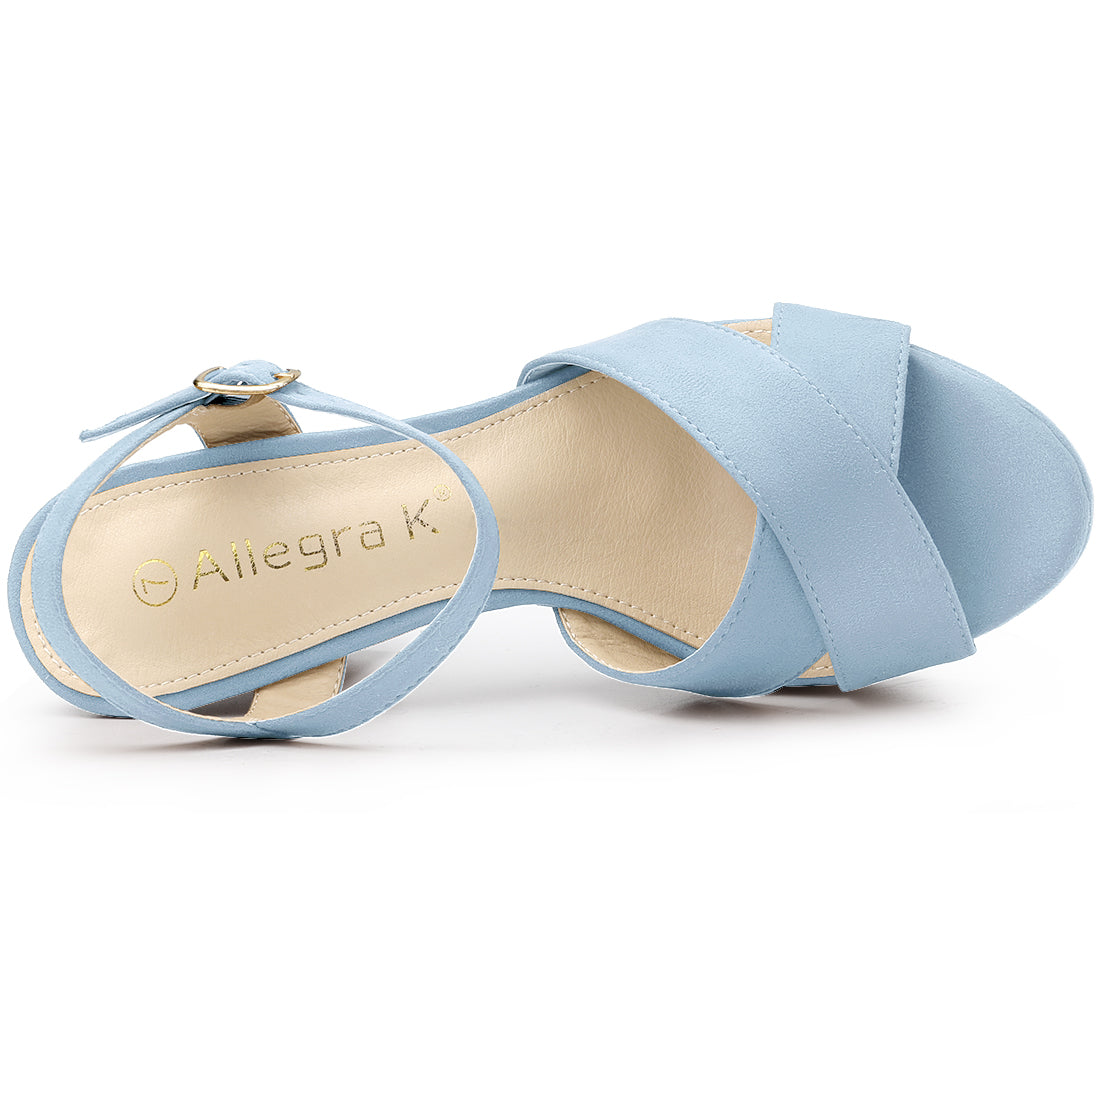 Allegra K Platform Chunky Heel Ankle Strap Slingback Sandals